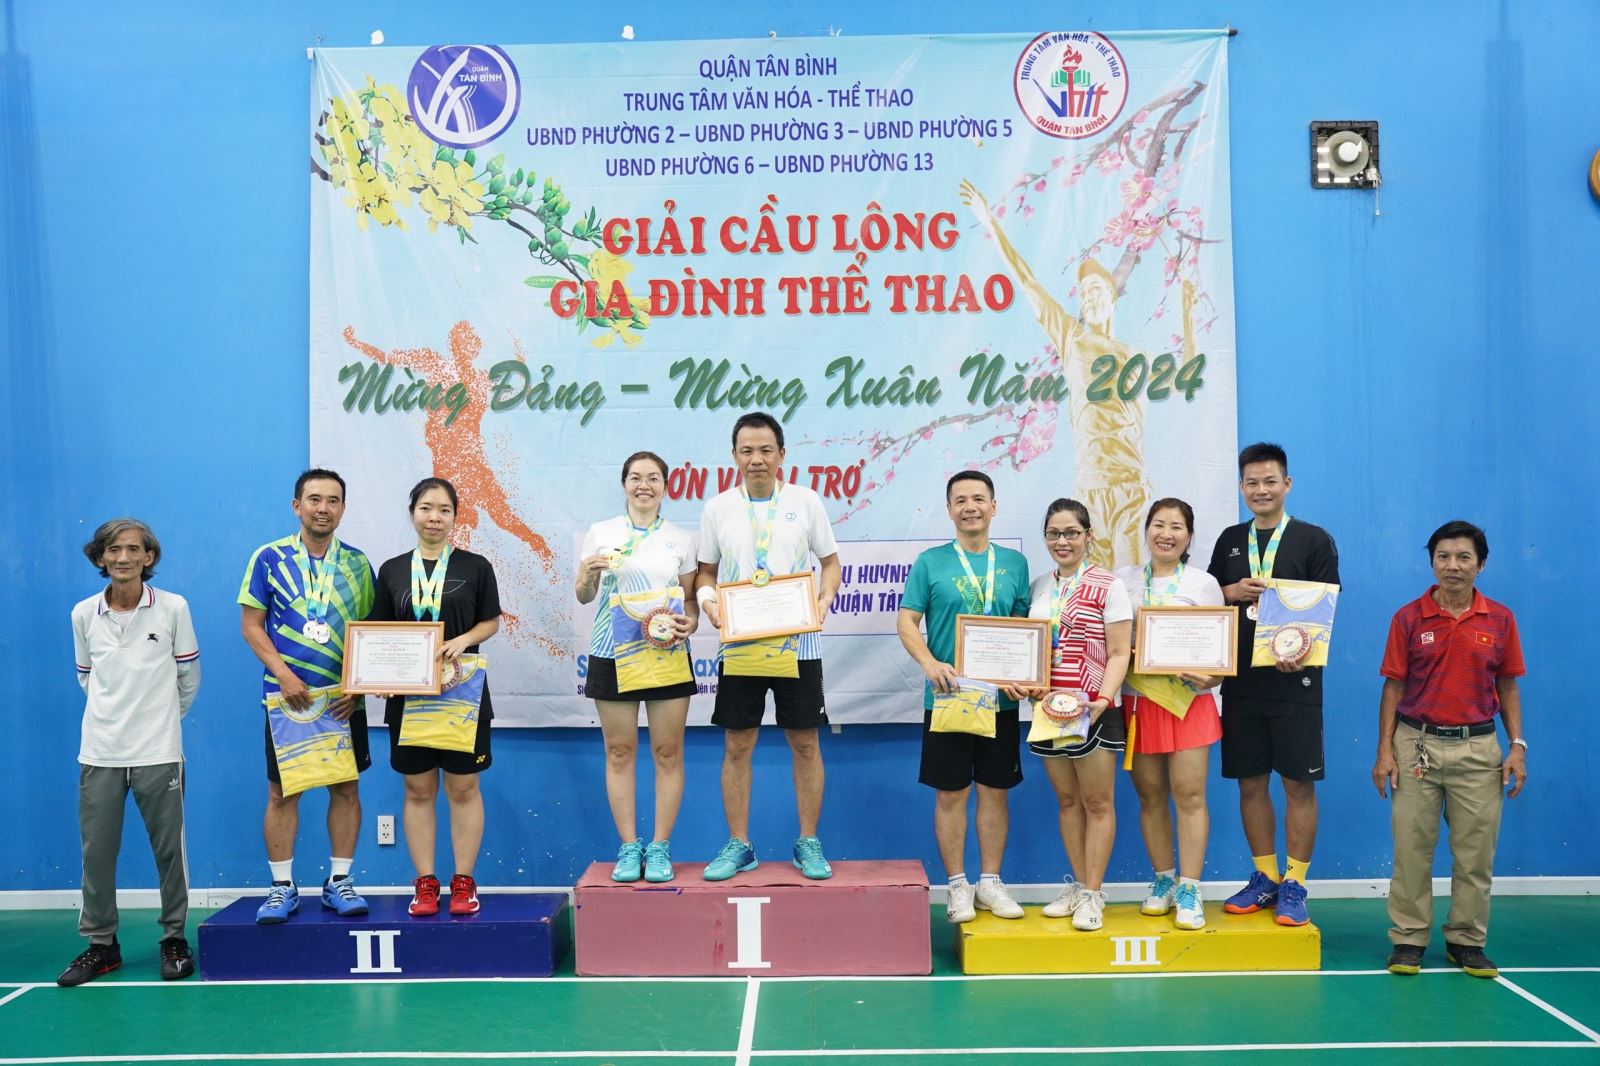 Trung tâm Văn hóa – Thể thao quận Tân Bình: Tổ chức Giải Cầu lông Gia đình Thể thao Mừng Đảng – Mừng xuân năm 2024